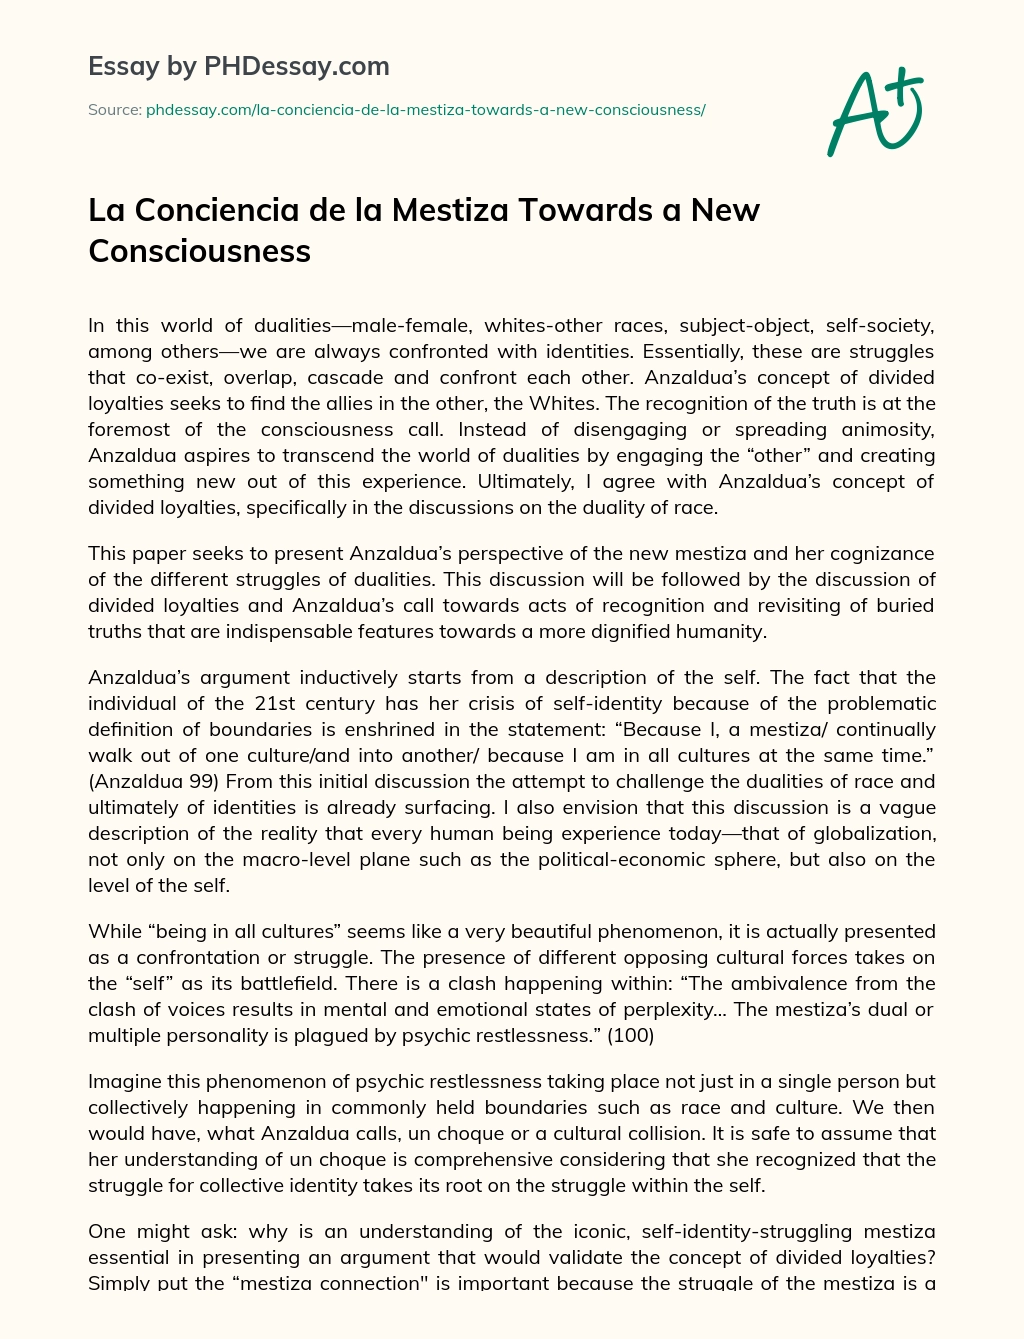 La Conciencia de la Mestiza Towards a New Consciousness essay